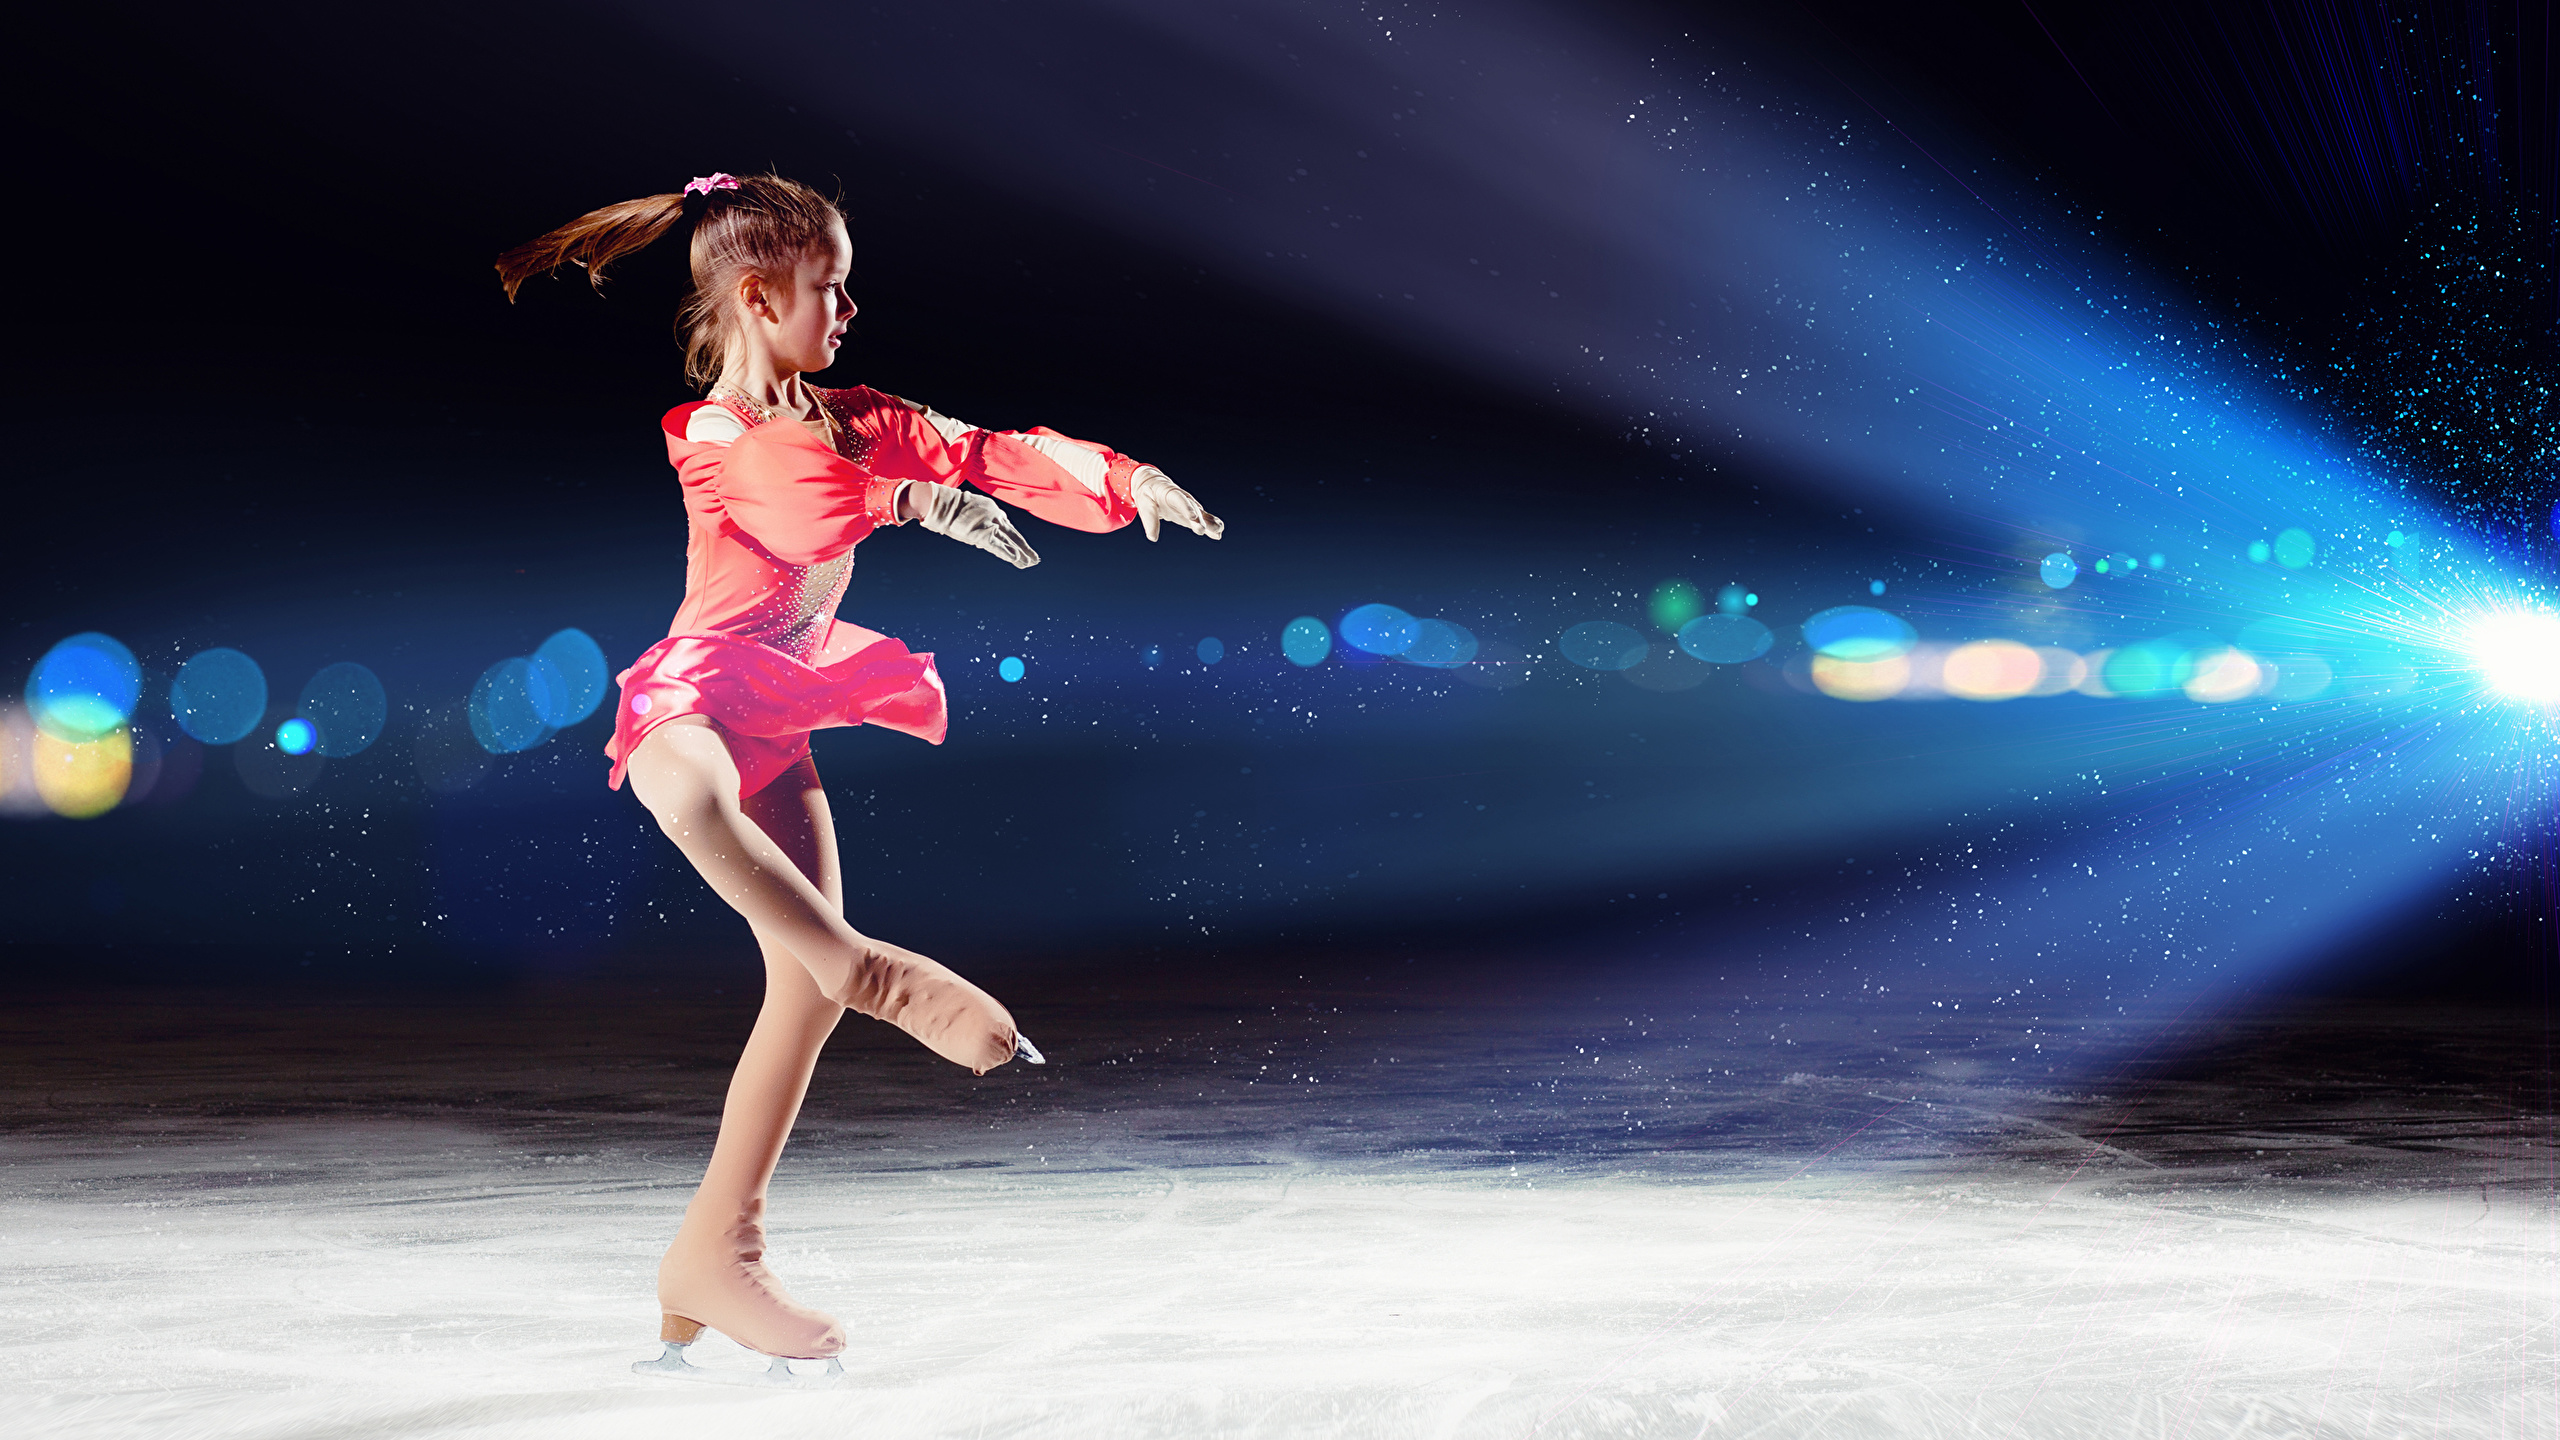 壁紙 2560x1440 小さな女の子 氷 スケート靴 ダンス 子供 ダウンロード 写真